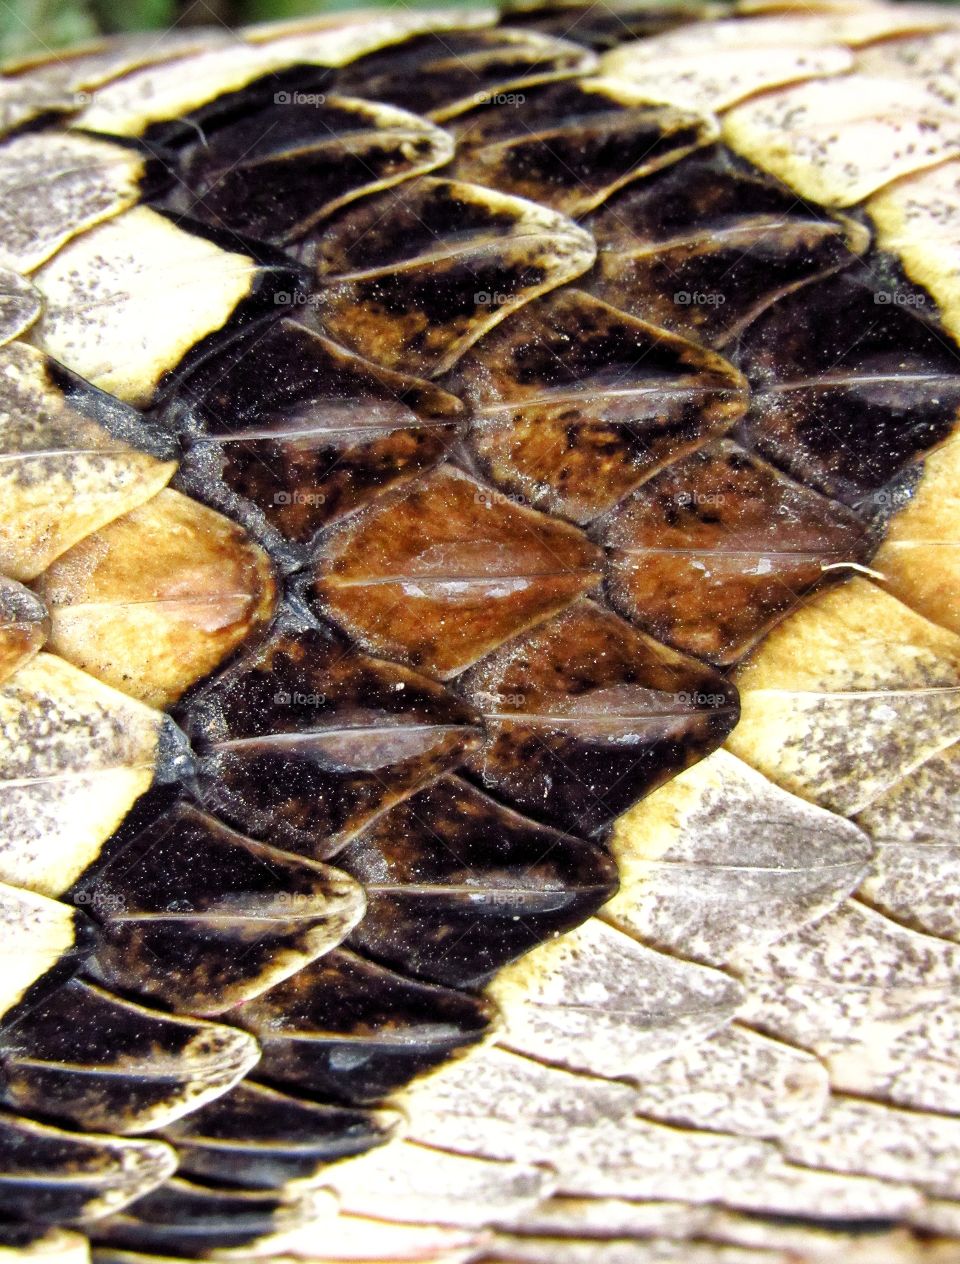 extreme close up skin of rattlesnake pattern